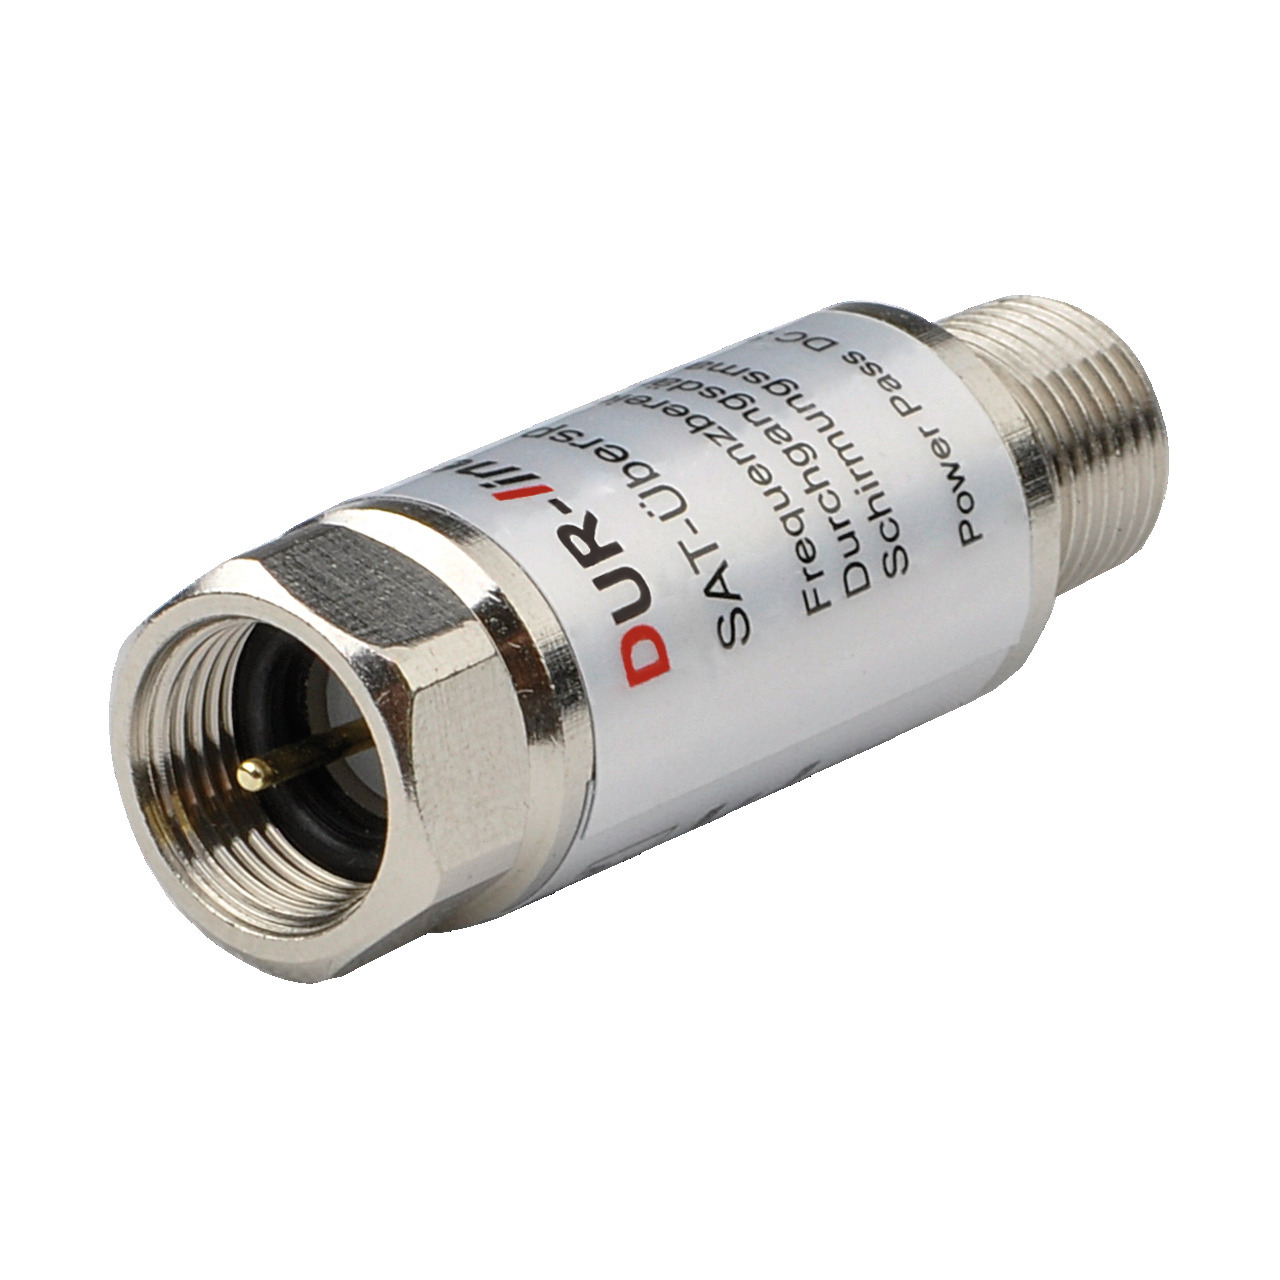 DUR-line Überspannungs-Blitzschutz DLBS 3001- 0-3 dB Durchgangsdämpfung- passend zu Erdungsblöcken